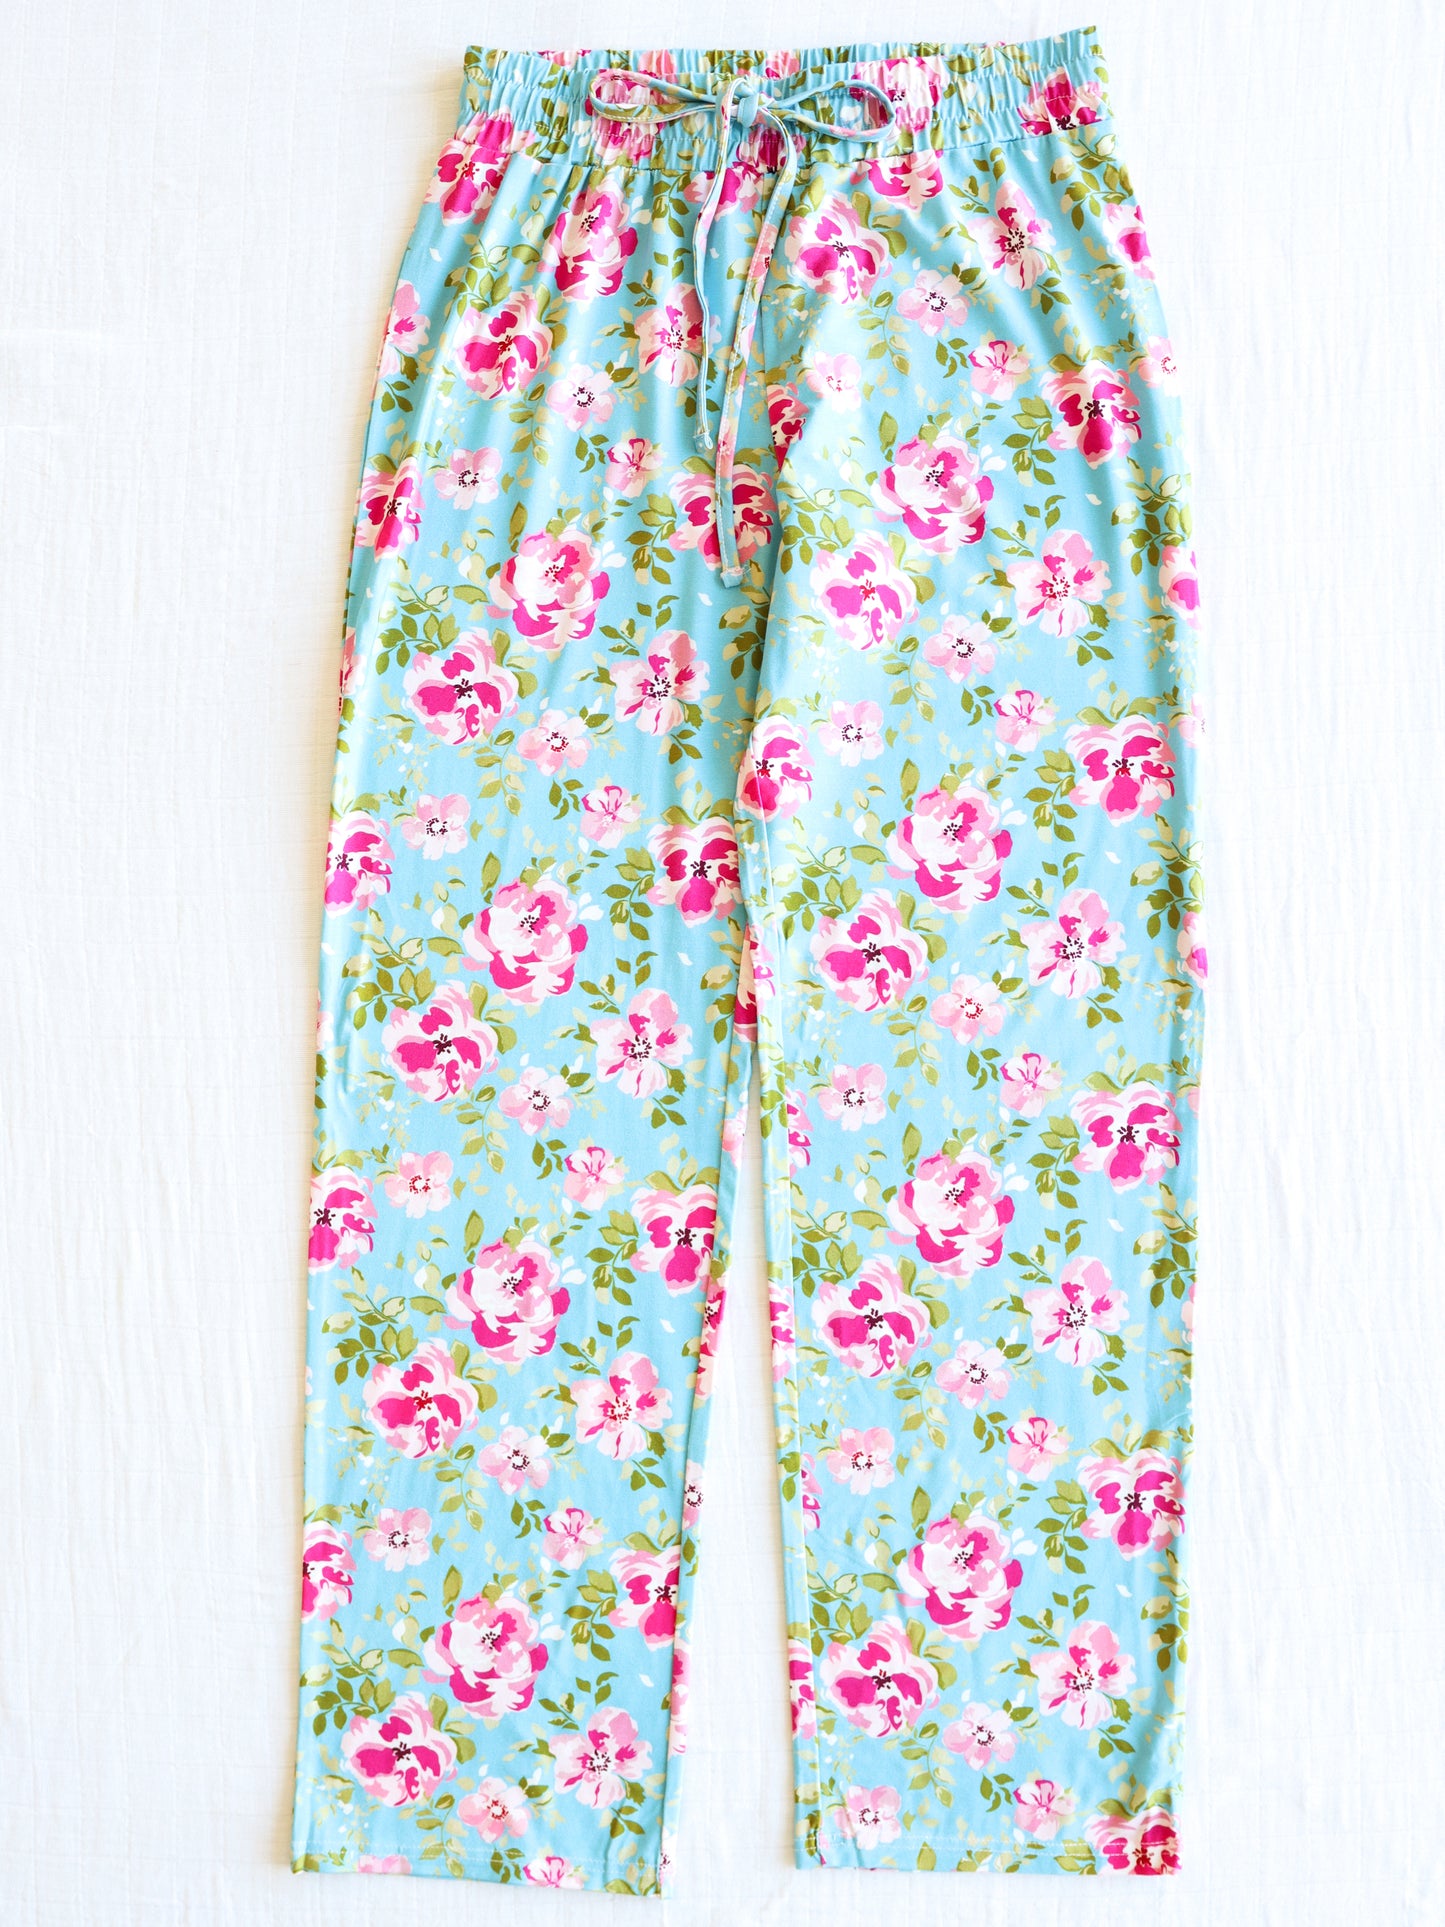 Women's Cloud Pajamas - Swirly Floral Pinks